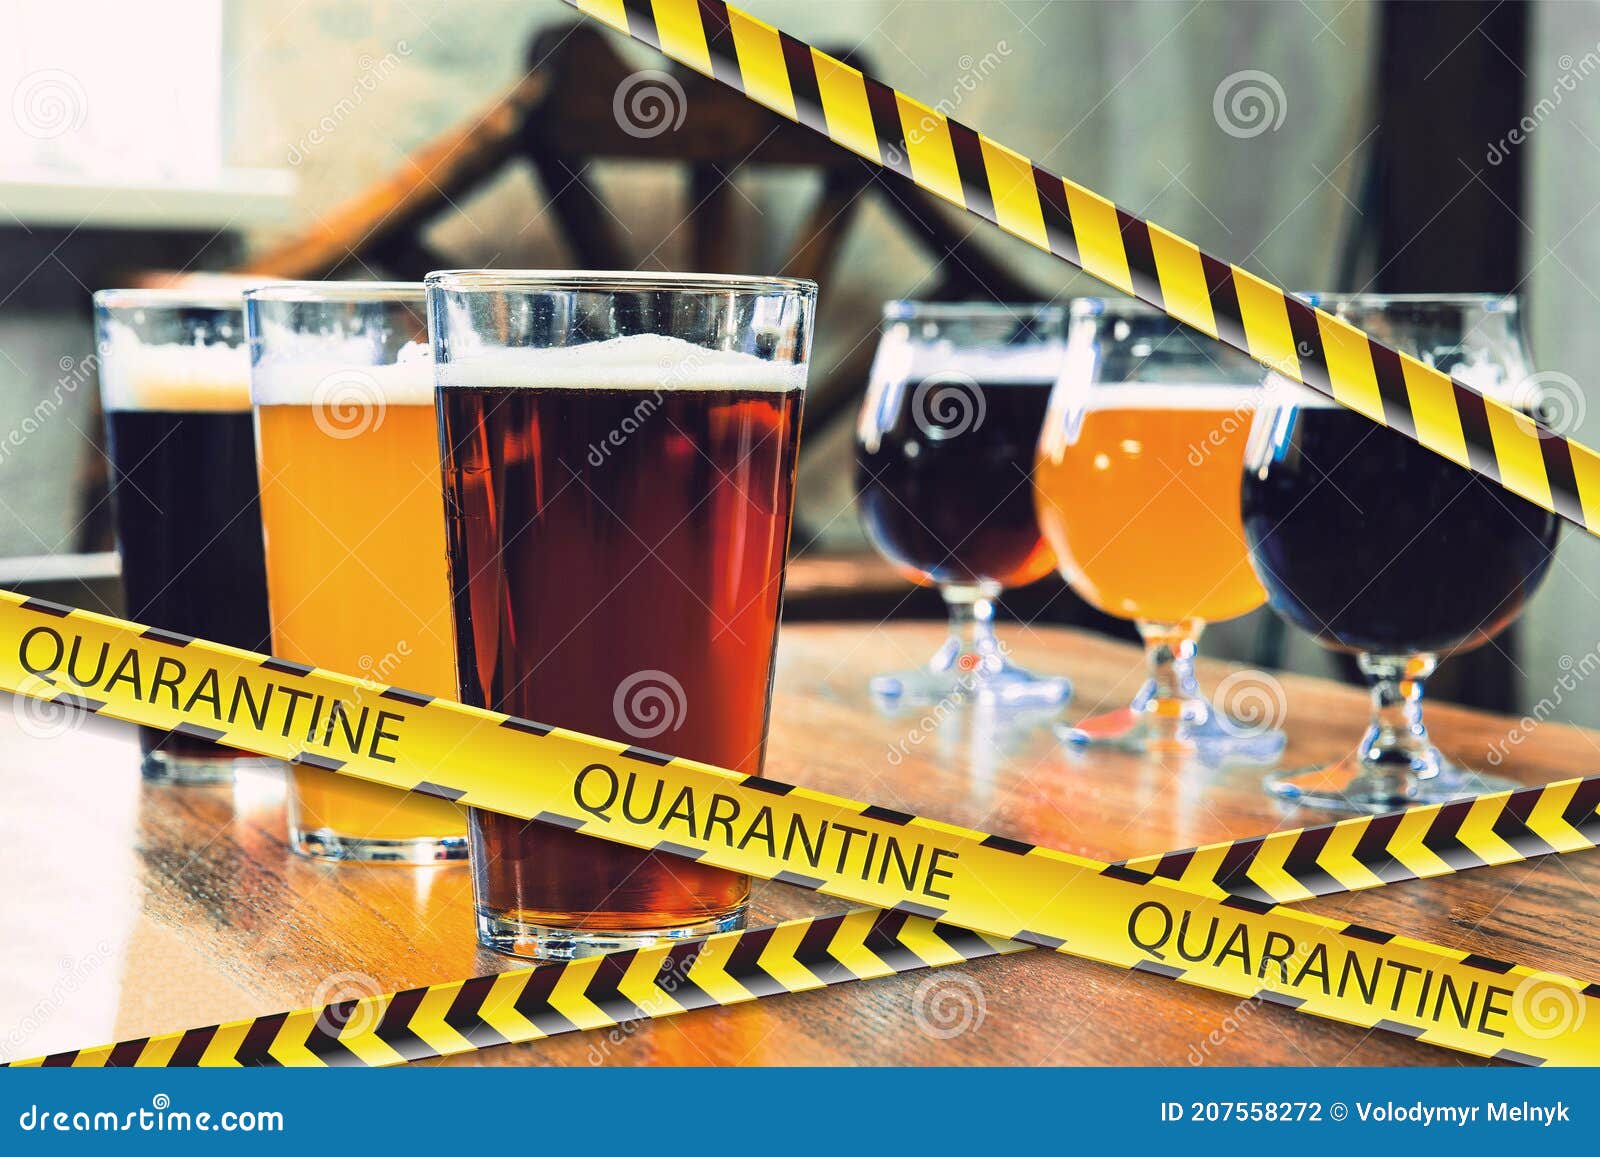 https://thumbs.dreamstime.com/z/glasses-different-types-beer-bar-bounding-tapes-lockdown-coronavirus-quarantine-warning-closing-bars-restaurants-207558272.jpg